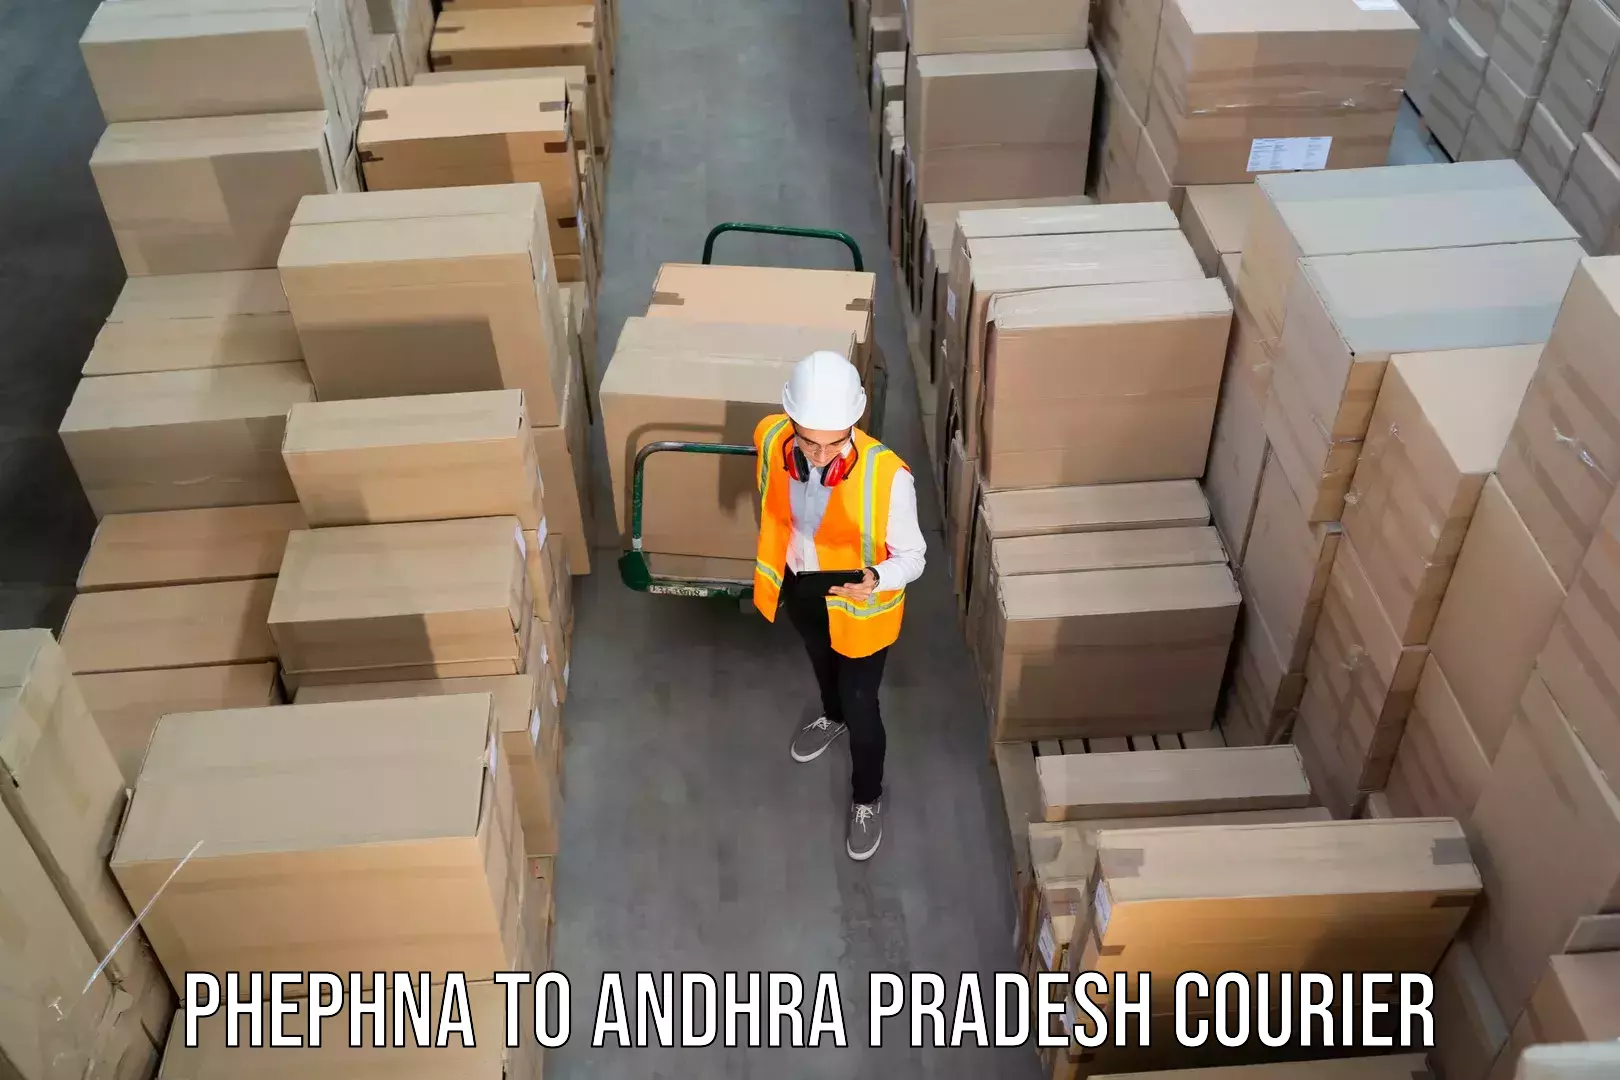 Personal courier services Phephna to B Kothakota